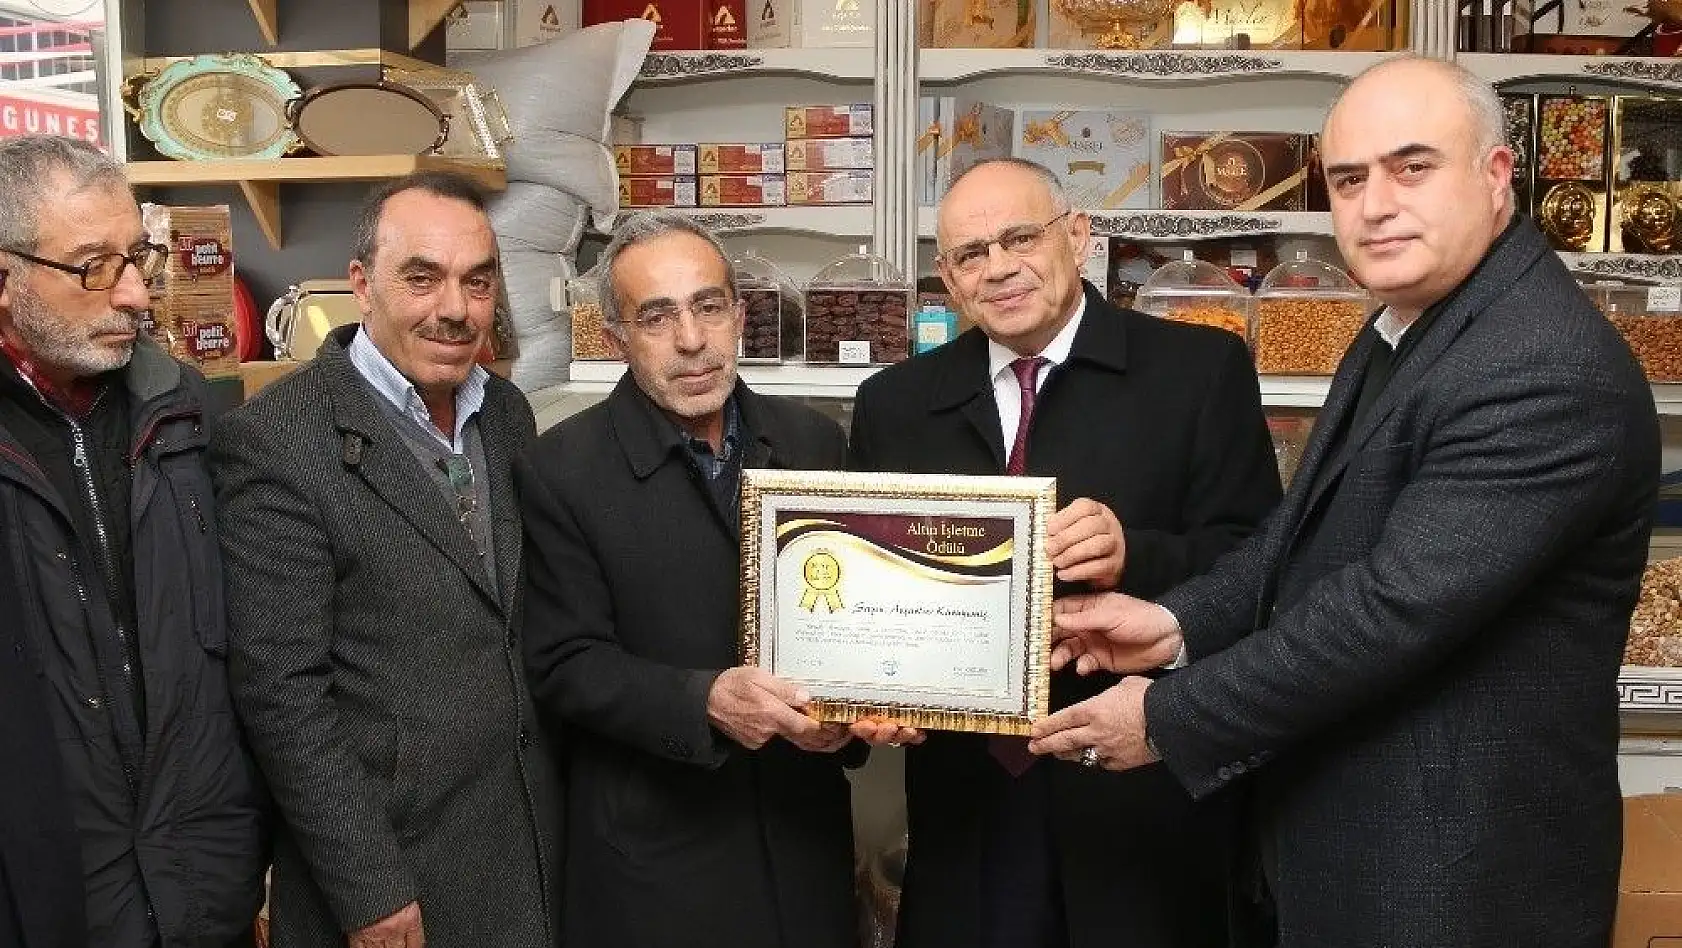 Yahyalı'da 'Altın işletme ödülleri' dağıtılmaya başlandı
